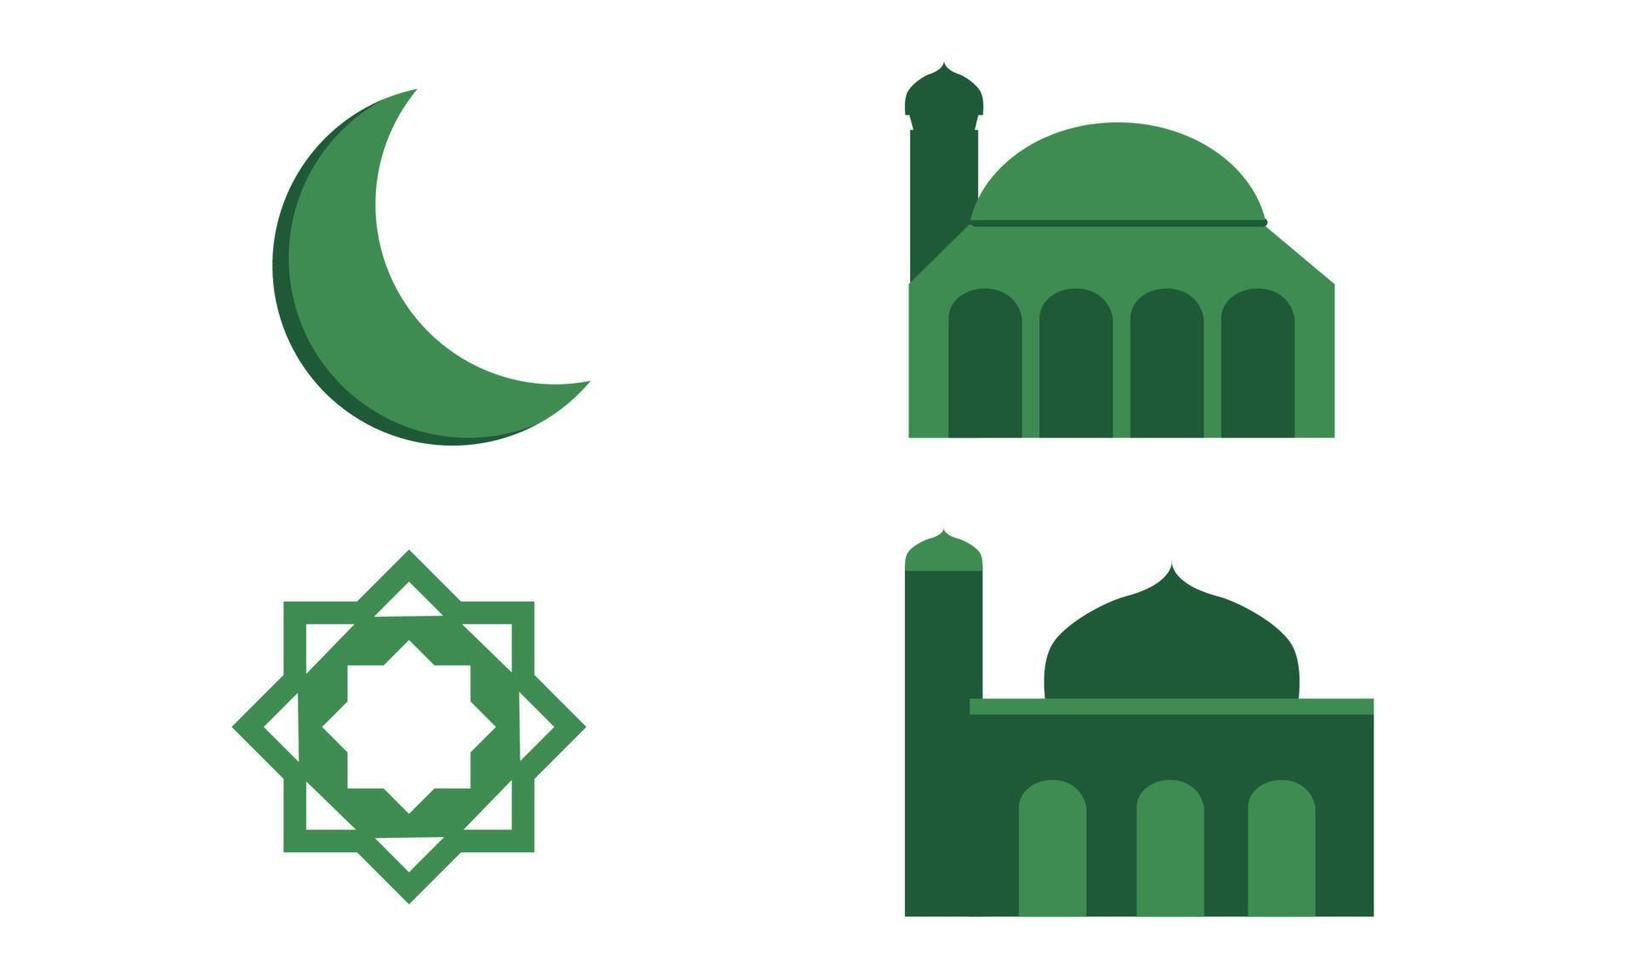 masjid símbolo islâmico quatro conjunto isolado com fundo branco vetor